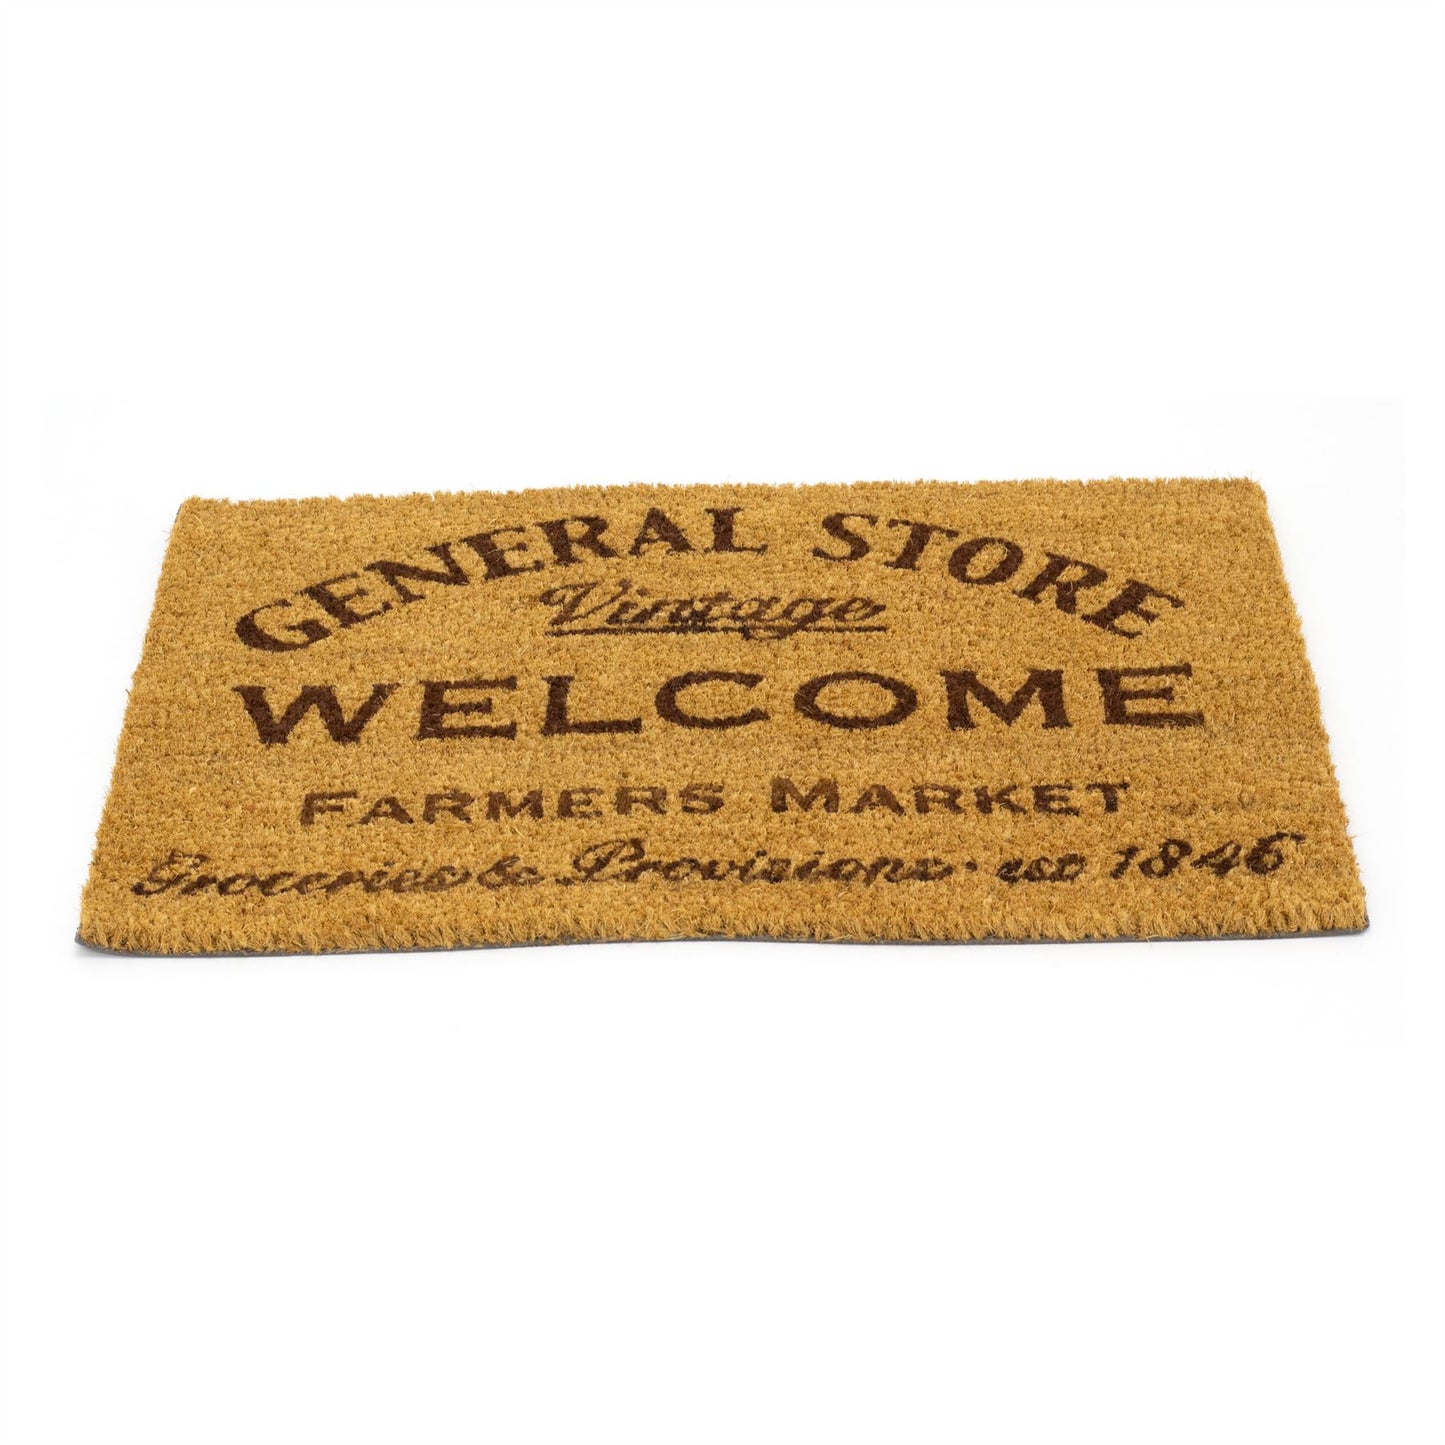 General Store Doormat | Rectangular Entrance Welcome Coir Door Mat - 60x40cm